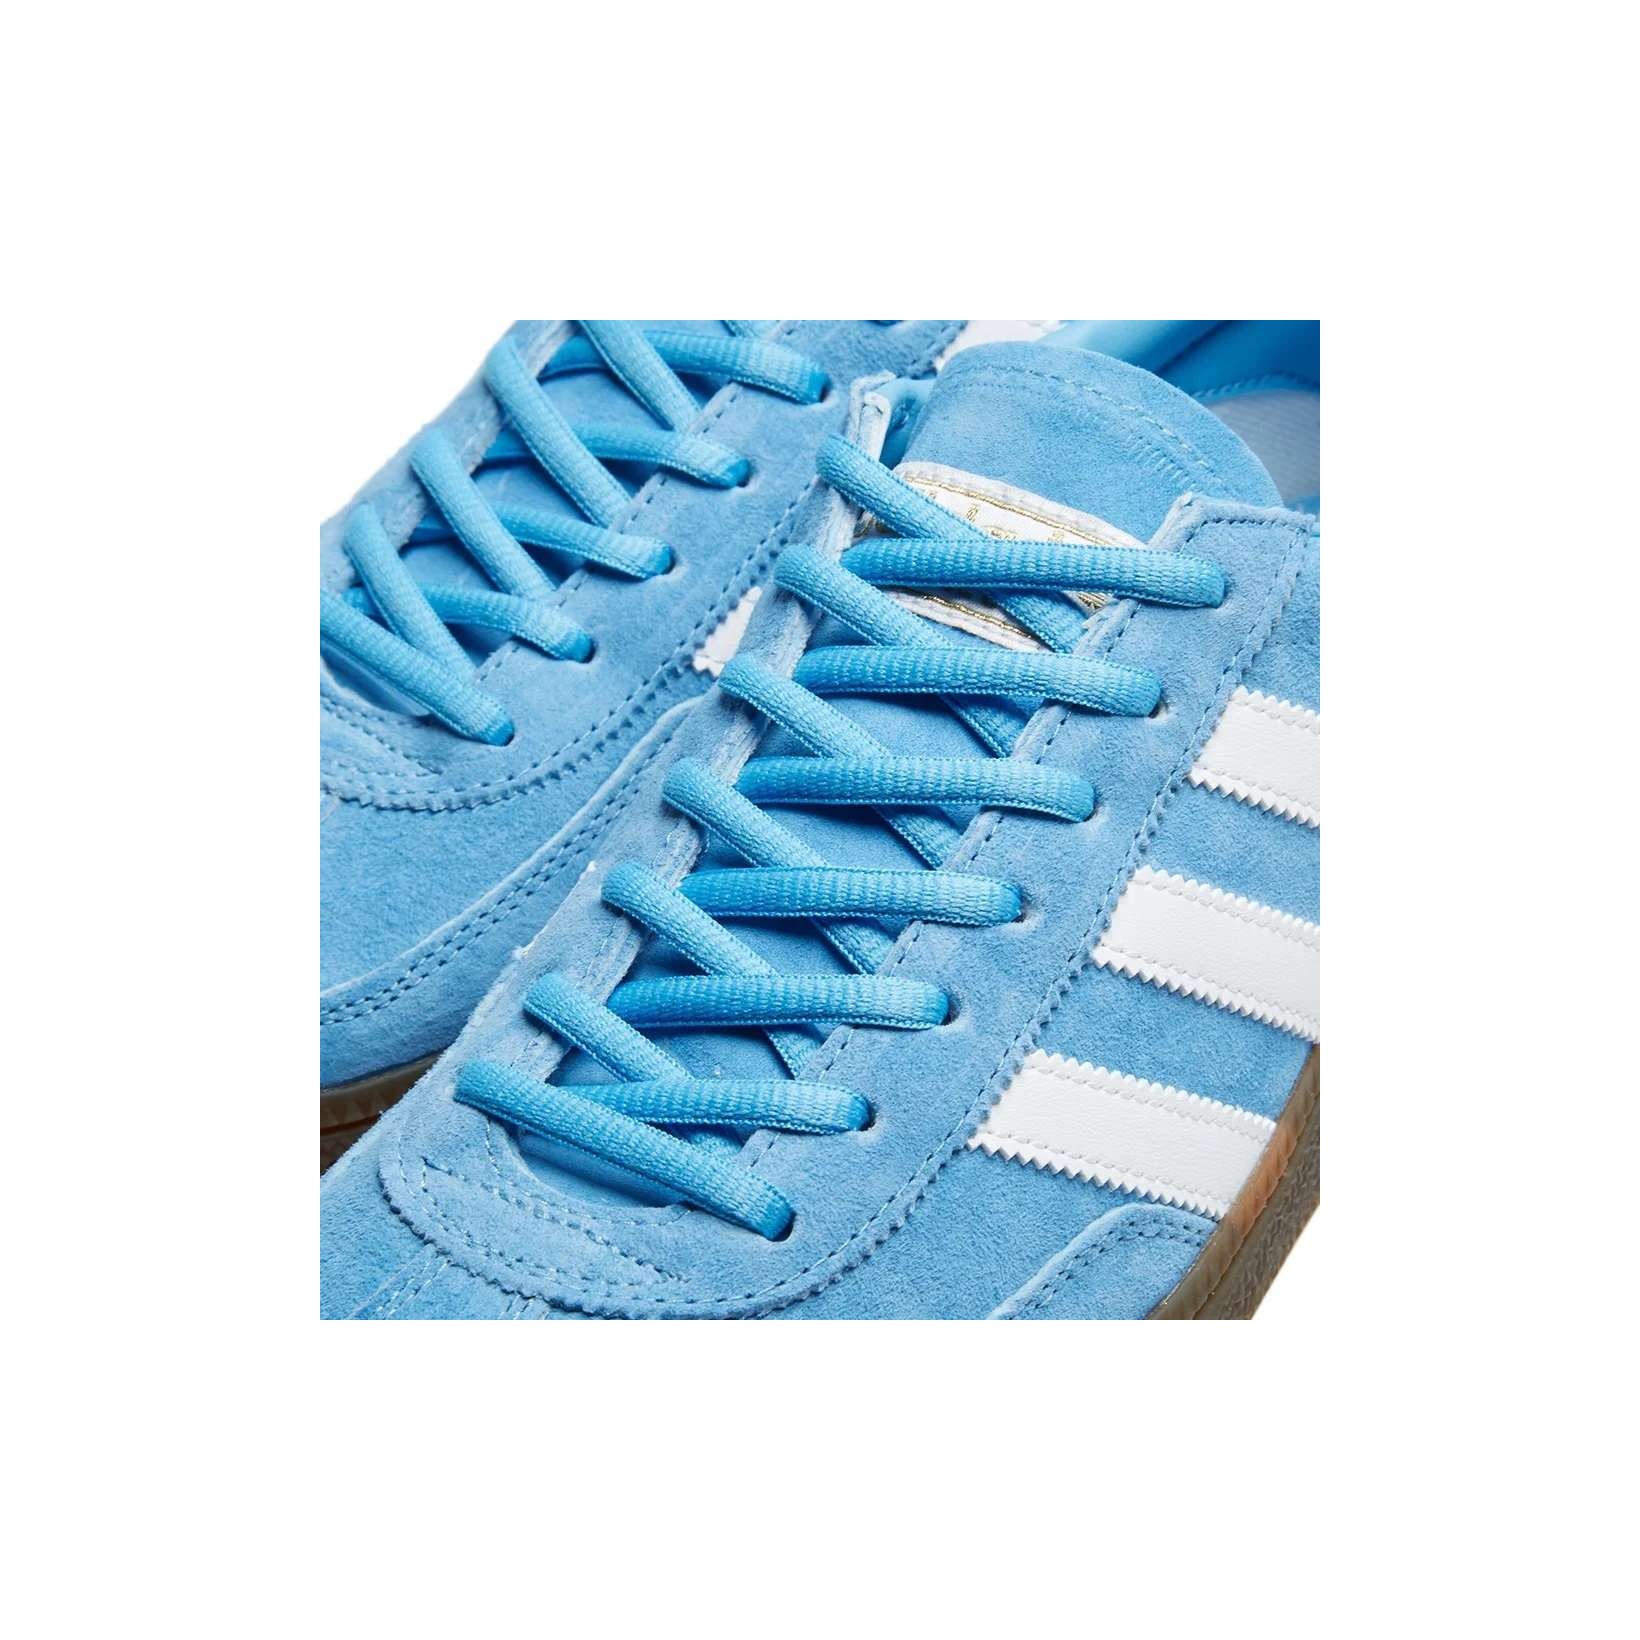 Adidas Spezial Light Blue, White & Gum